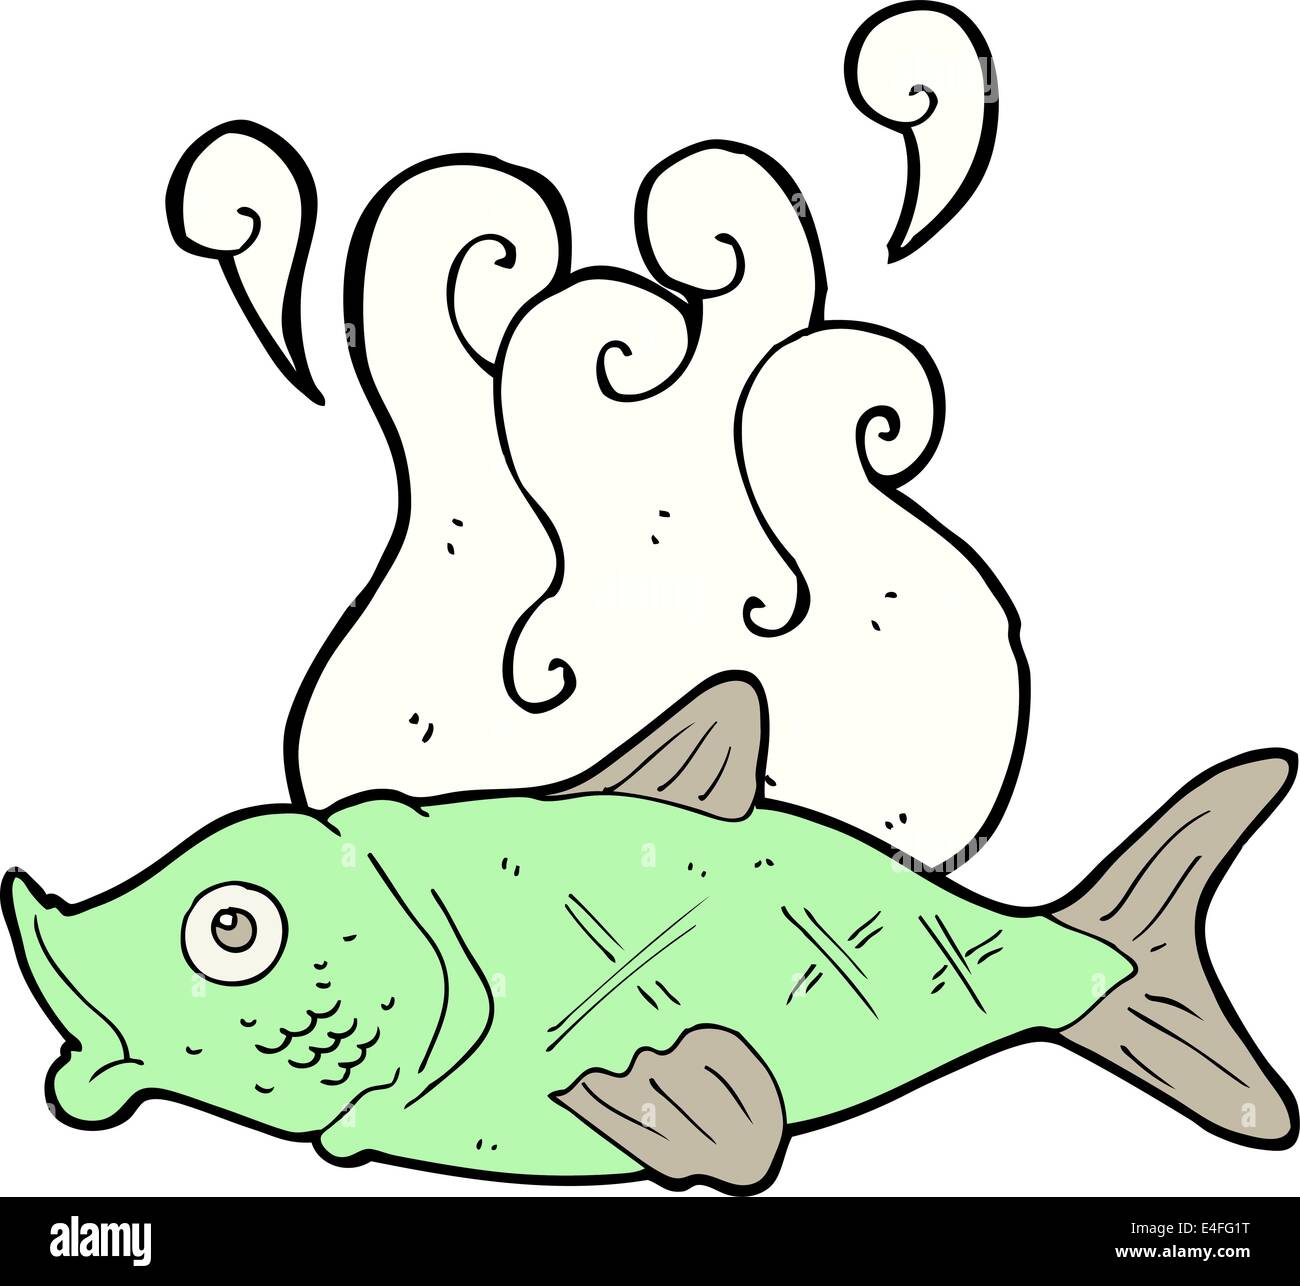 https://c8.alamy.com/comp/E4FG1T/cartoon-smelly-fish-E4FG1T.jpg